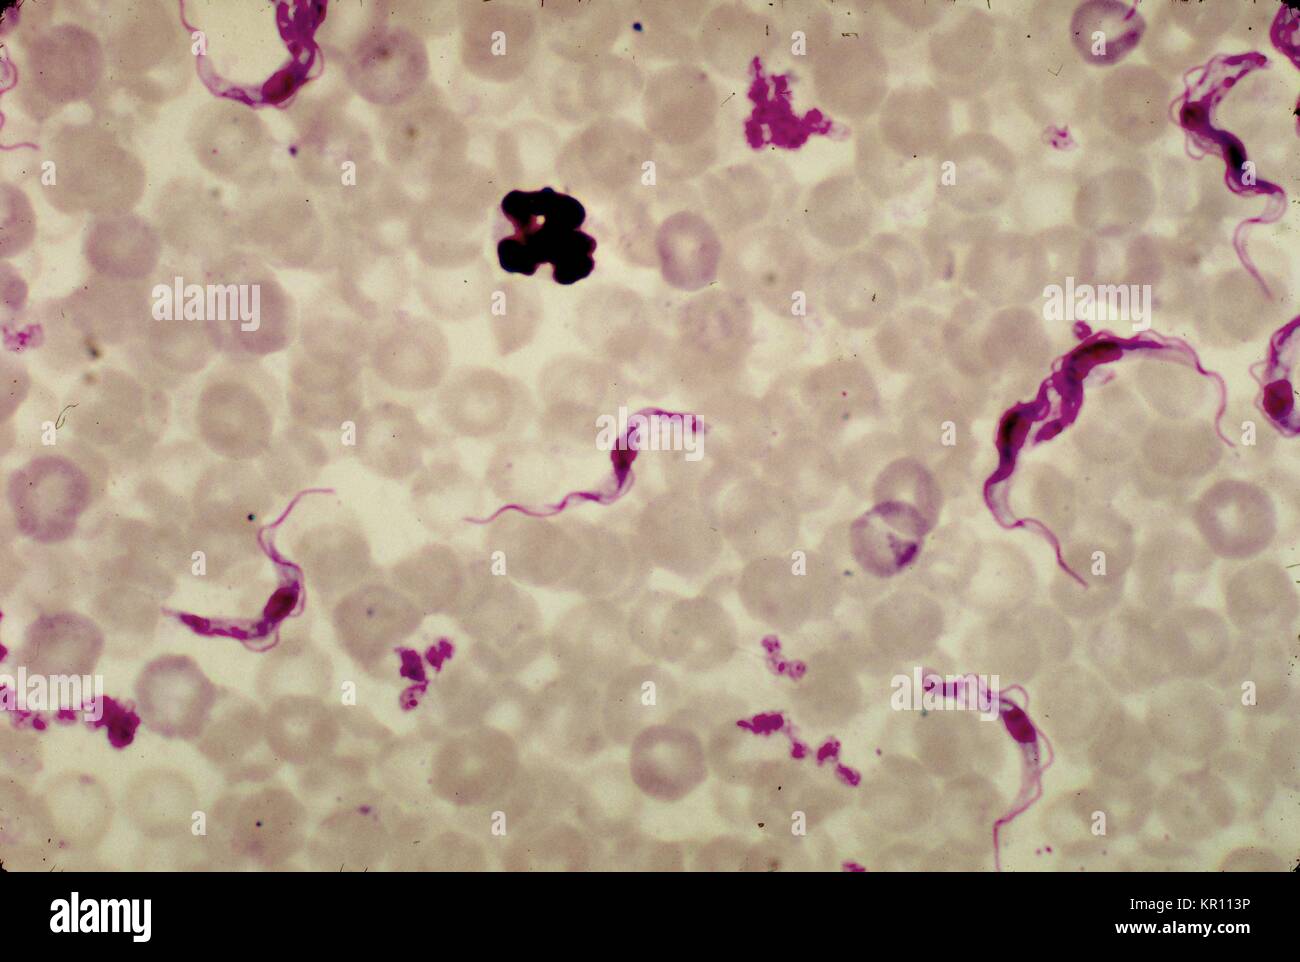 Dies ist ein schliffbild einer Ratte Blut enthüllen dem Namen Trypanosoma brucei Parasiten mit einer Giemsa Fleck Technik, 1977 bestreichen. Afrikanische Trypanosomiasis, oder?. die Schlafkrankheit?, einer schweren Infektion, die durch die protozoen dem Namen Trypanosoma brucei, ist in der Regel verteilt auf den Menschen durch die Tsetse Fliegen mit Tieren und anderen Menschen infiziert. Bild mit freundlicher Genehmigung von CDC/Dr. Mae Melvin. Stockfoto